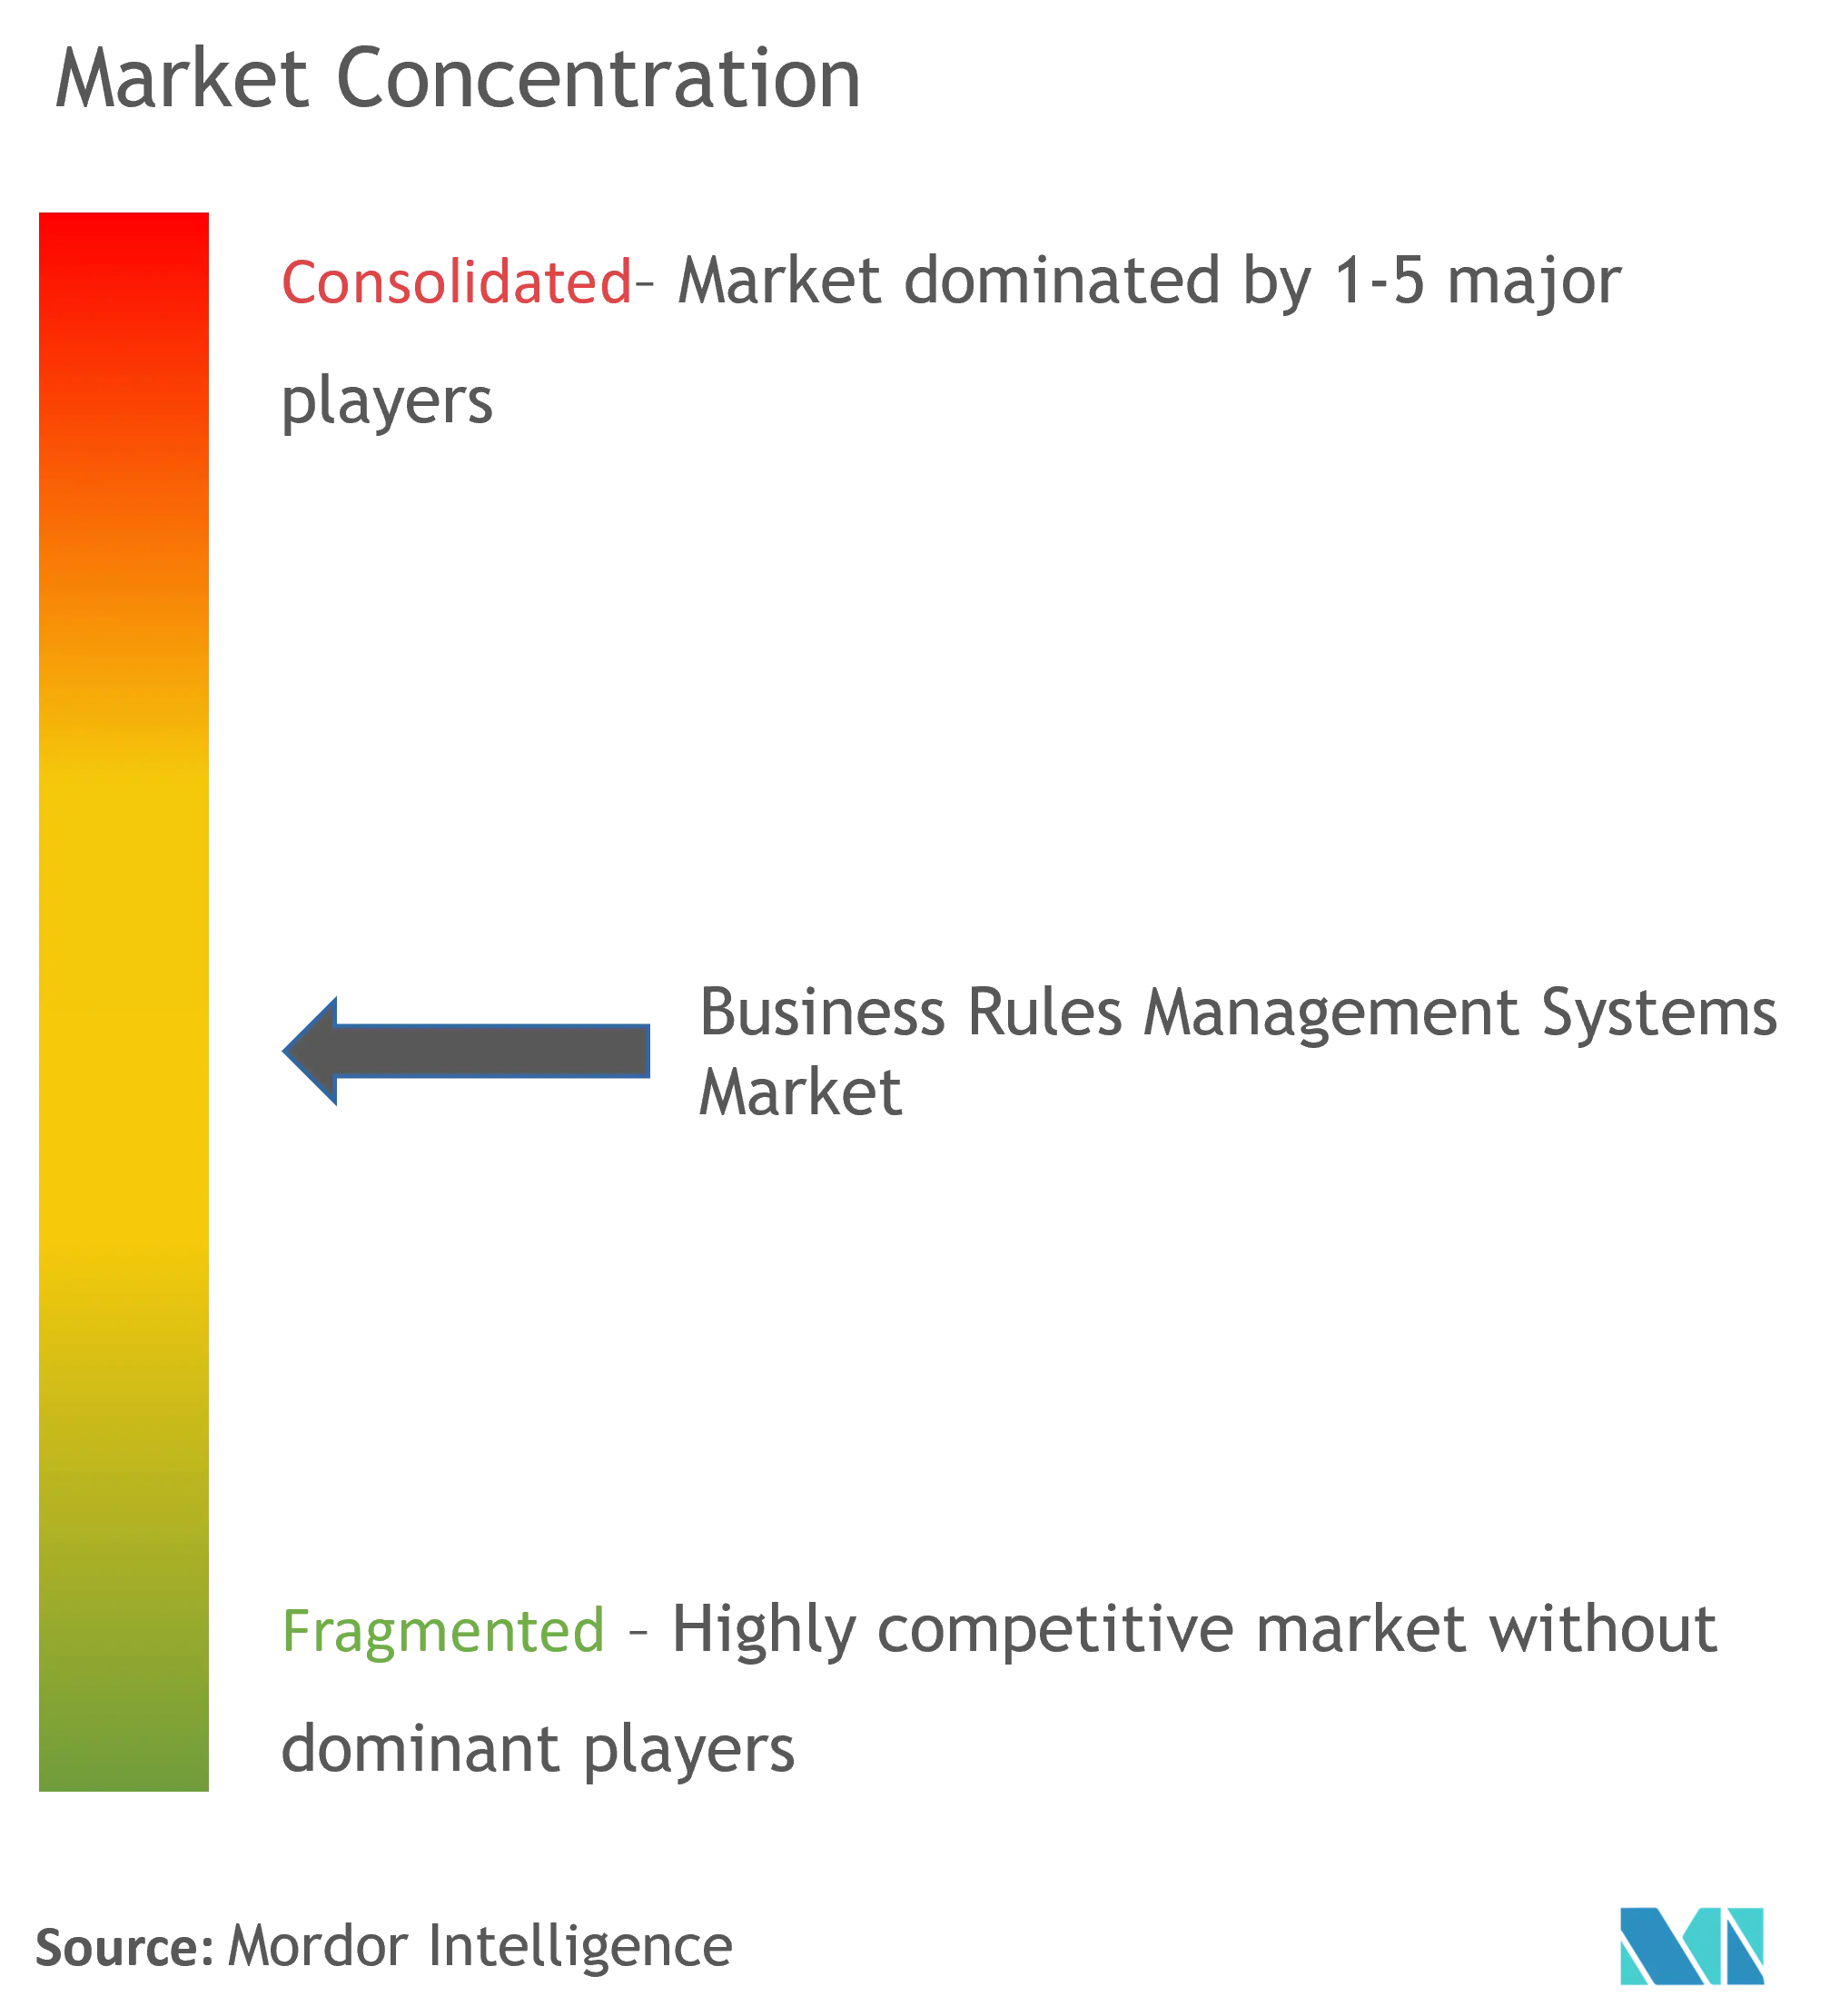 Sistemas de gestión de reglas comercialesConcentración del Mercado